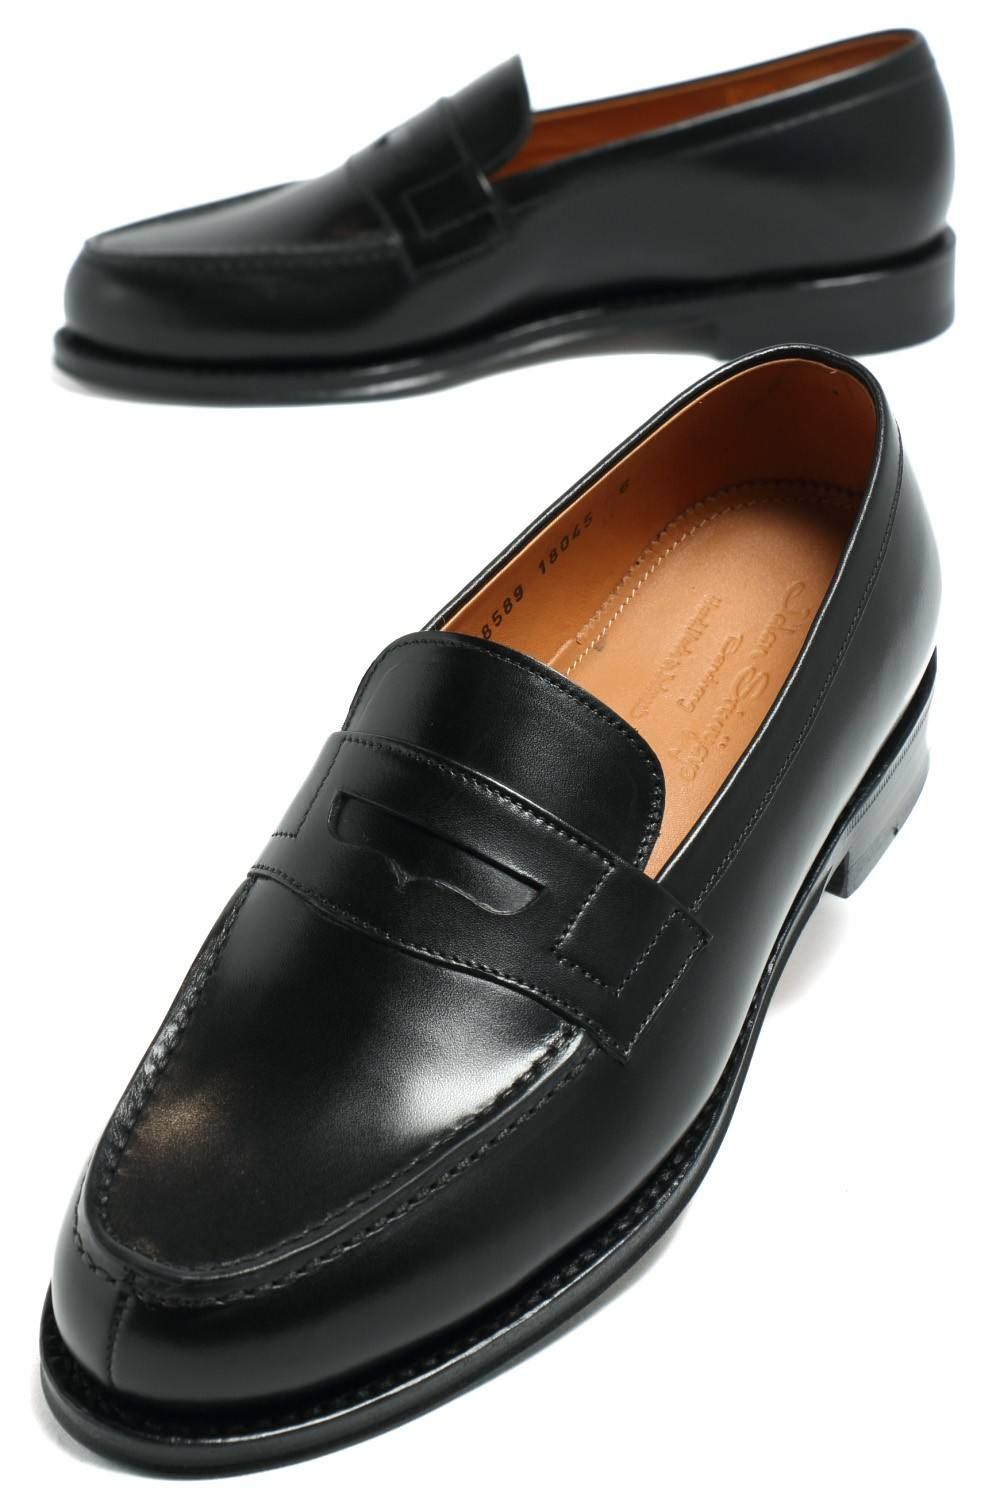 デュプイカーフ コインローファー シューズ 革靴 98589 / ブラック BLACK - 7.0